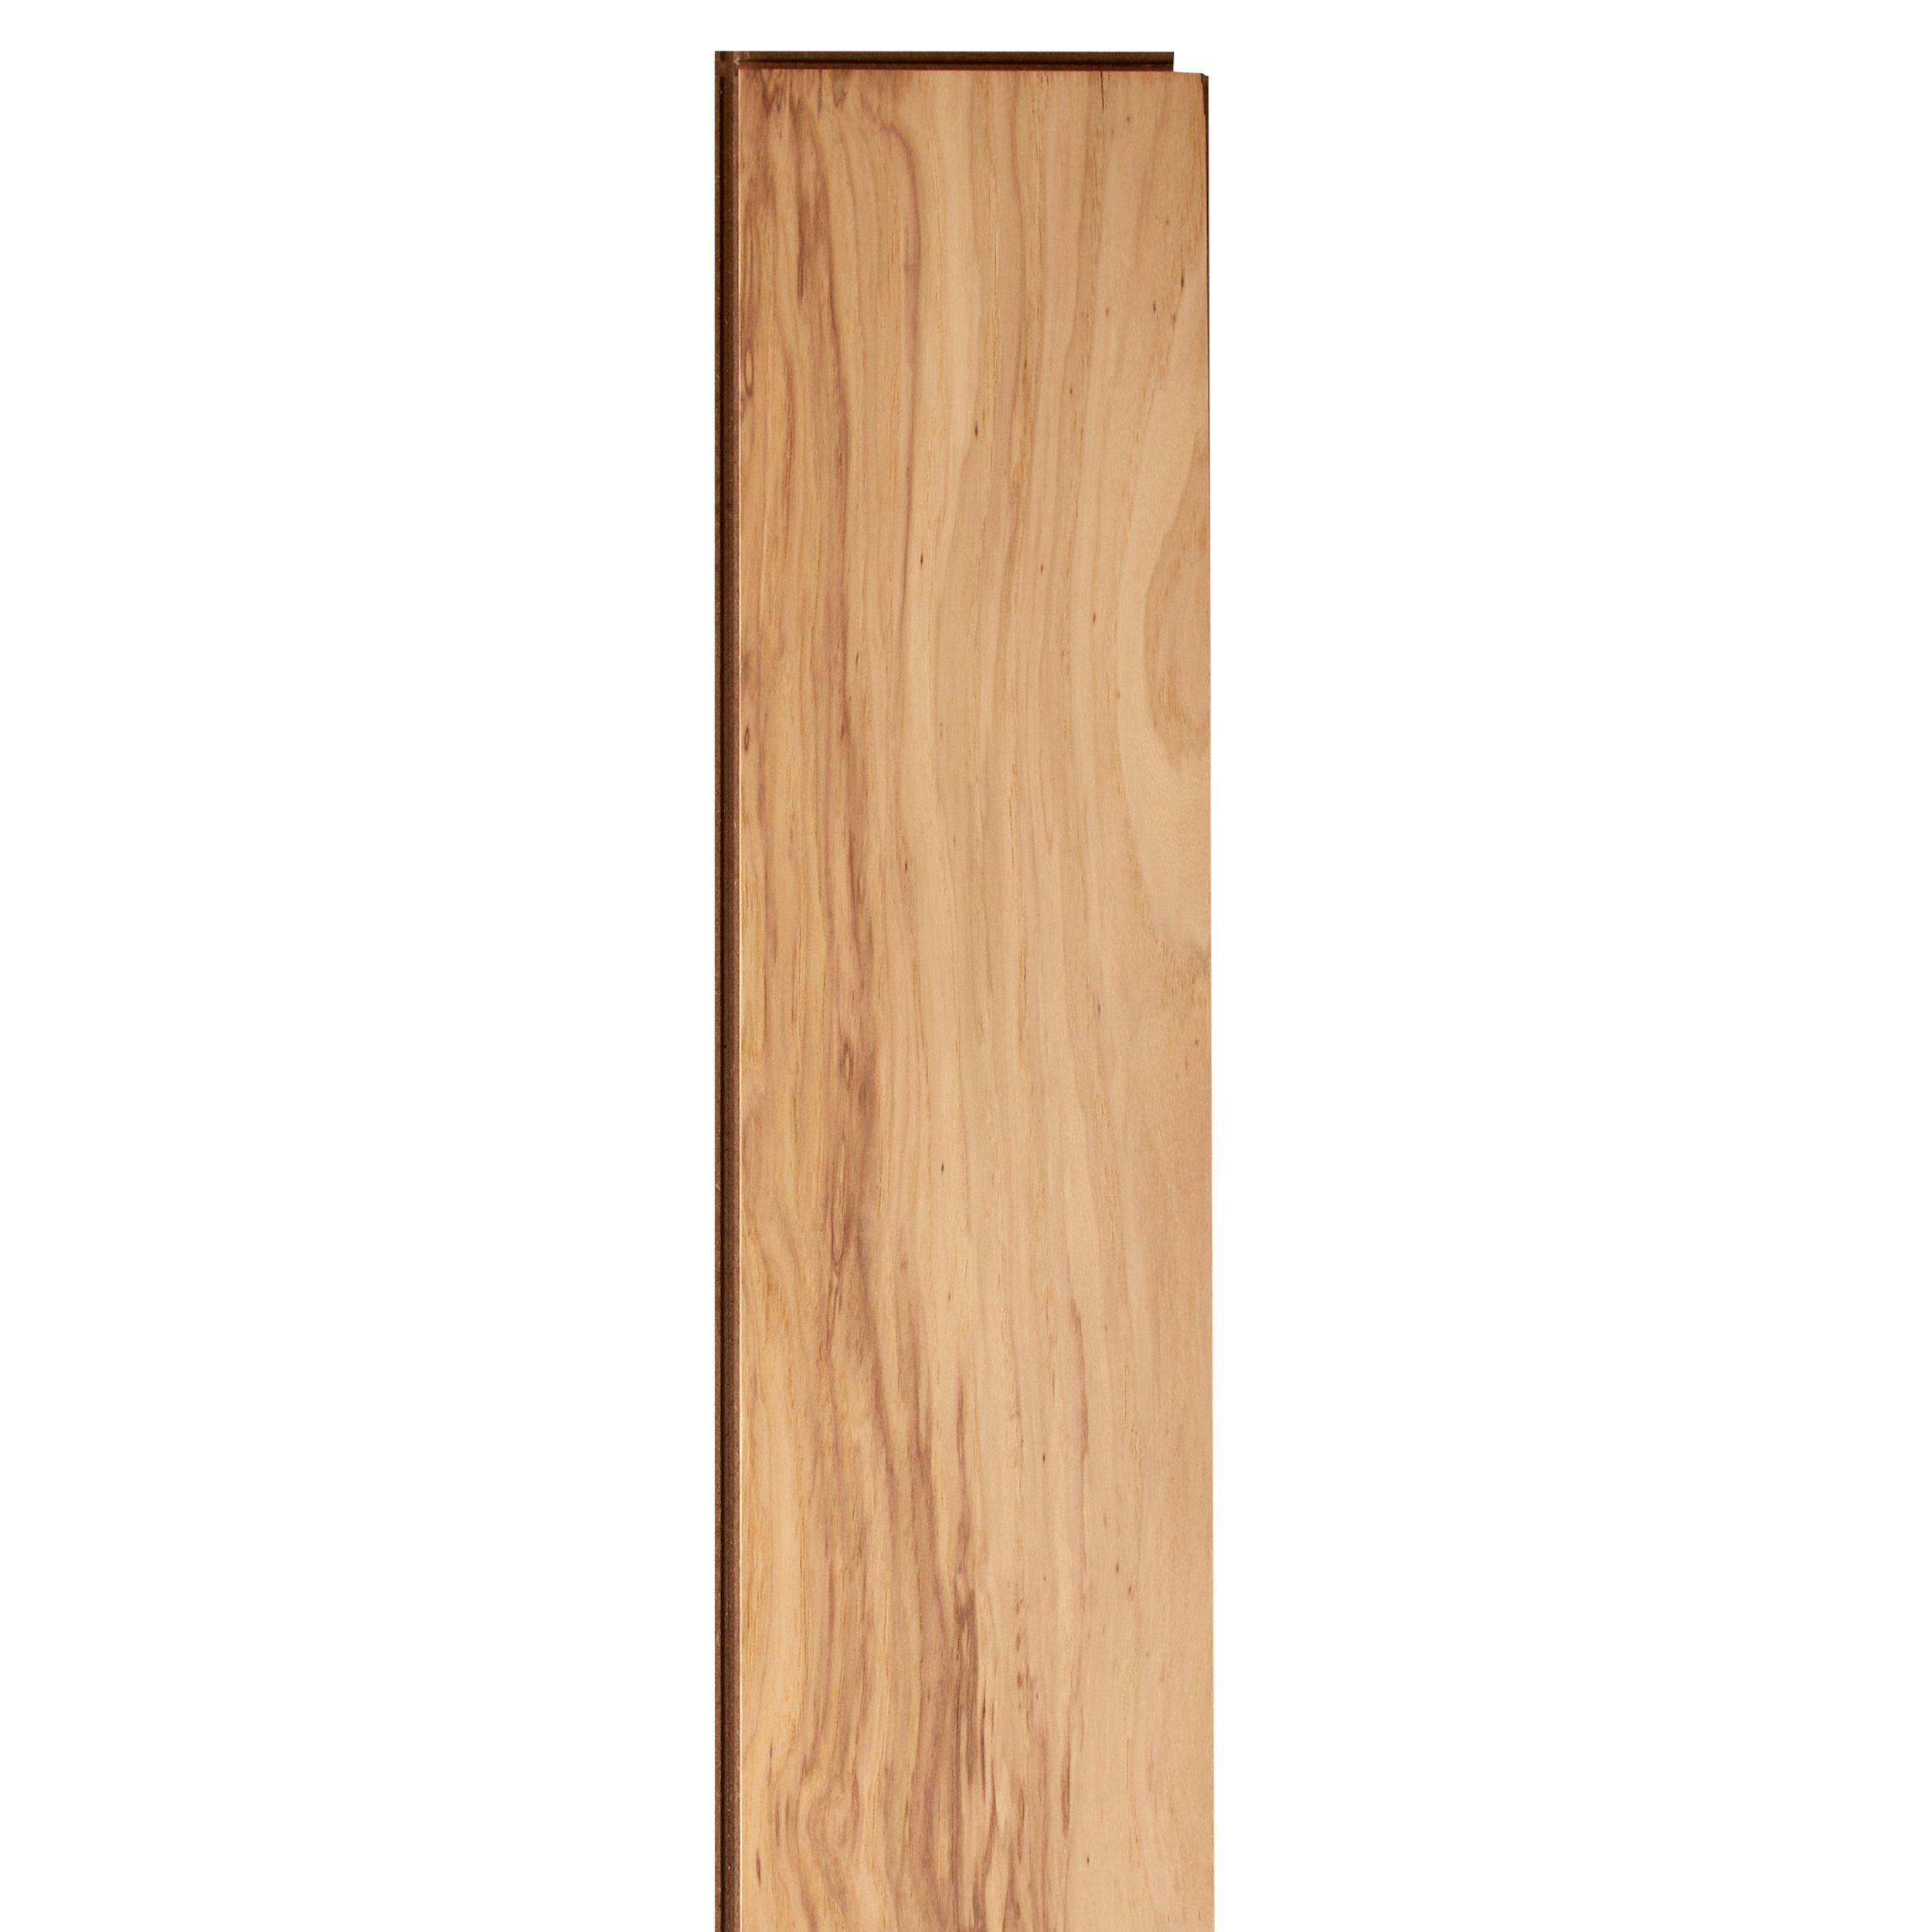 Morant Hickory Distressed Engineered Hardwood